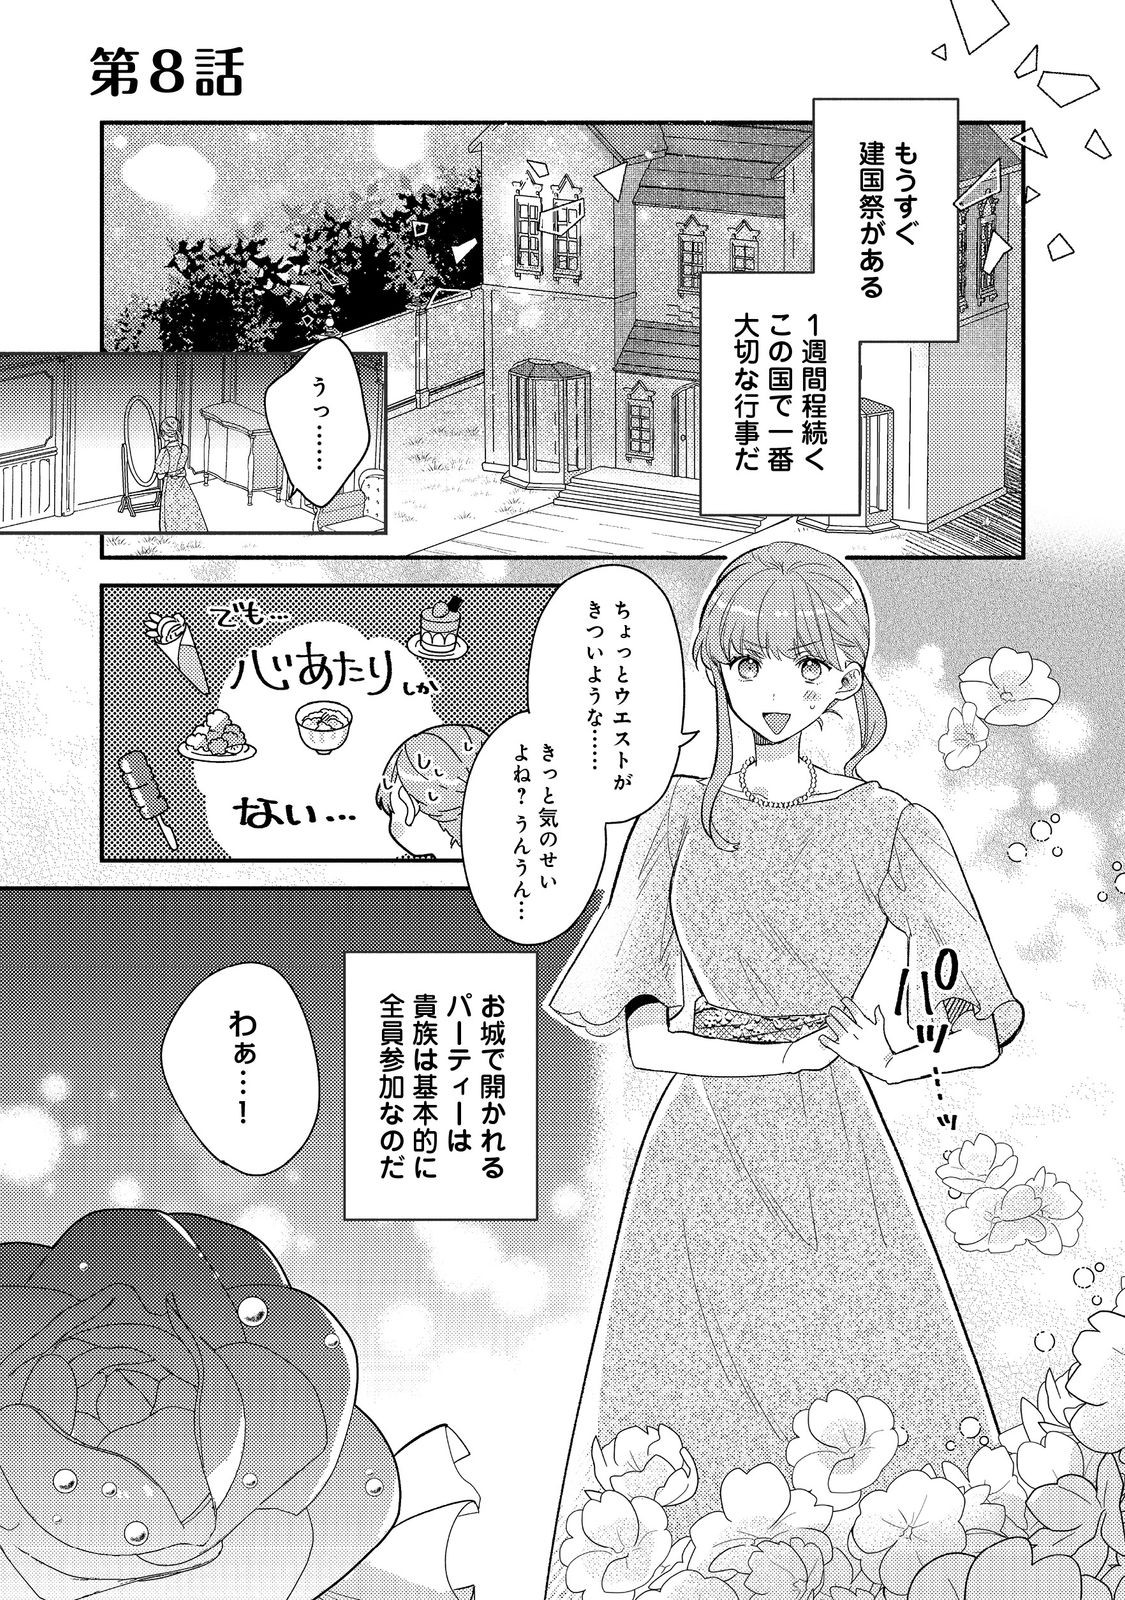 Kikan Gentei, Daishi Kishidan no Kitchen Maid – Kekkon Shitakunai no de Shuushoku shimashita - Chapter 8.1 - Page 1